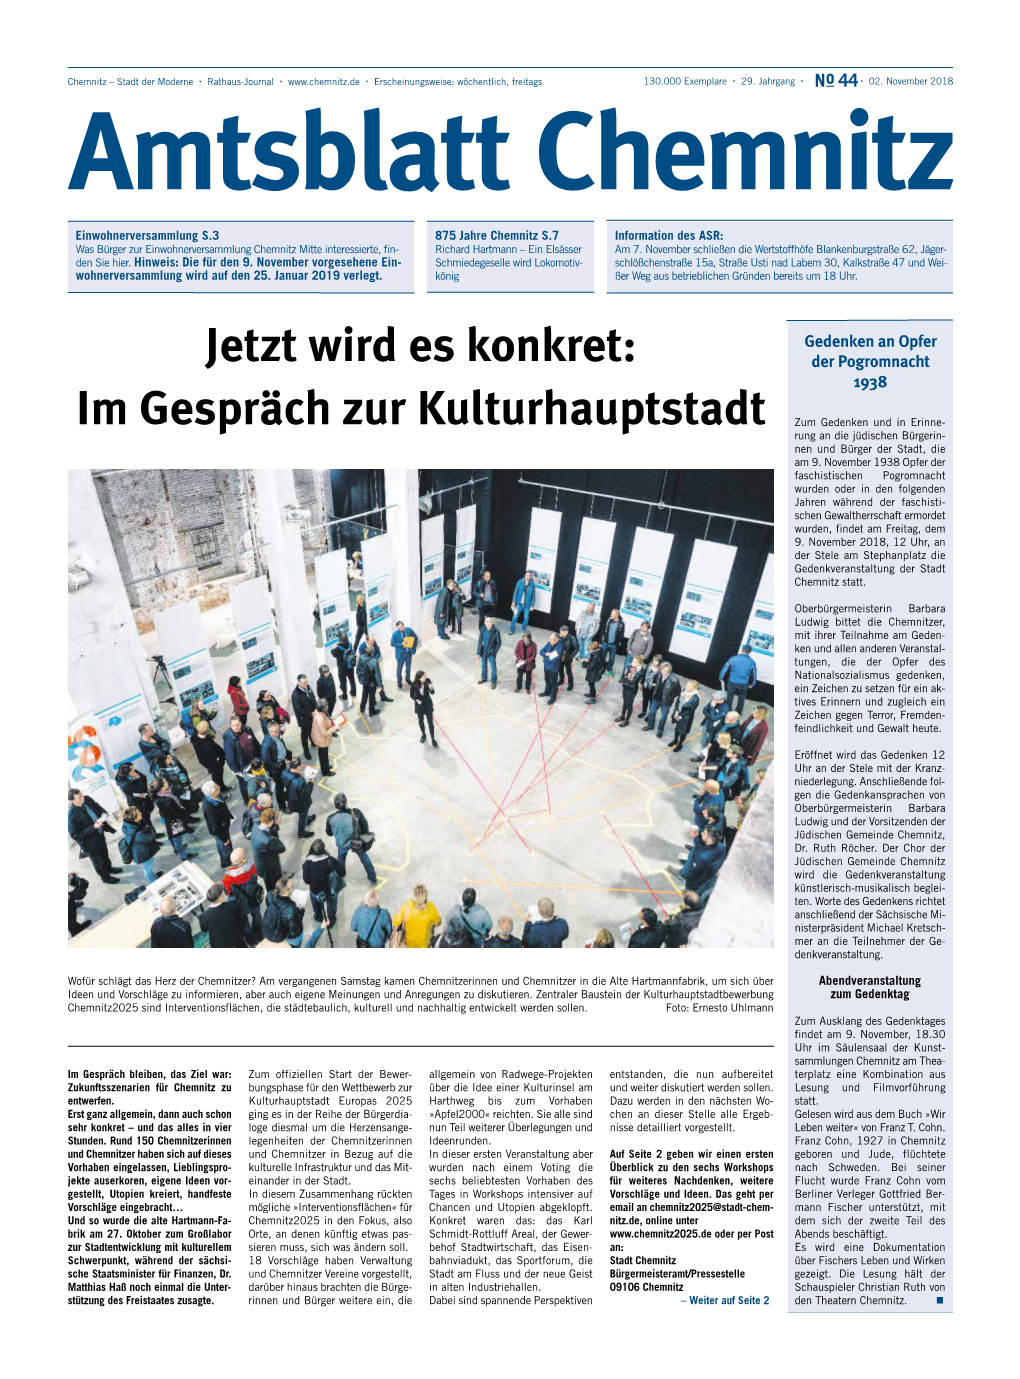 Amtsblatt Chemnitz, No 44, 02.11.2018